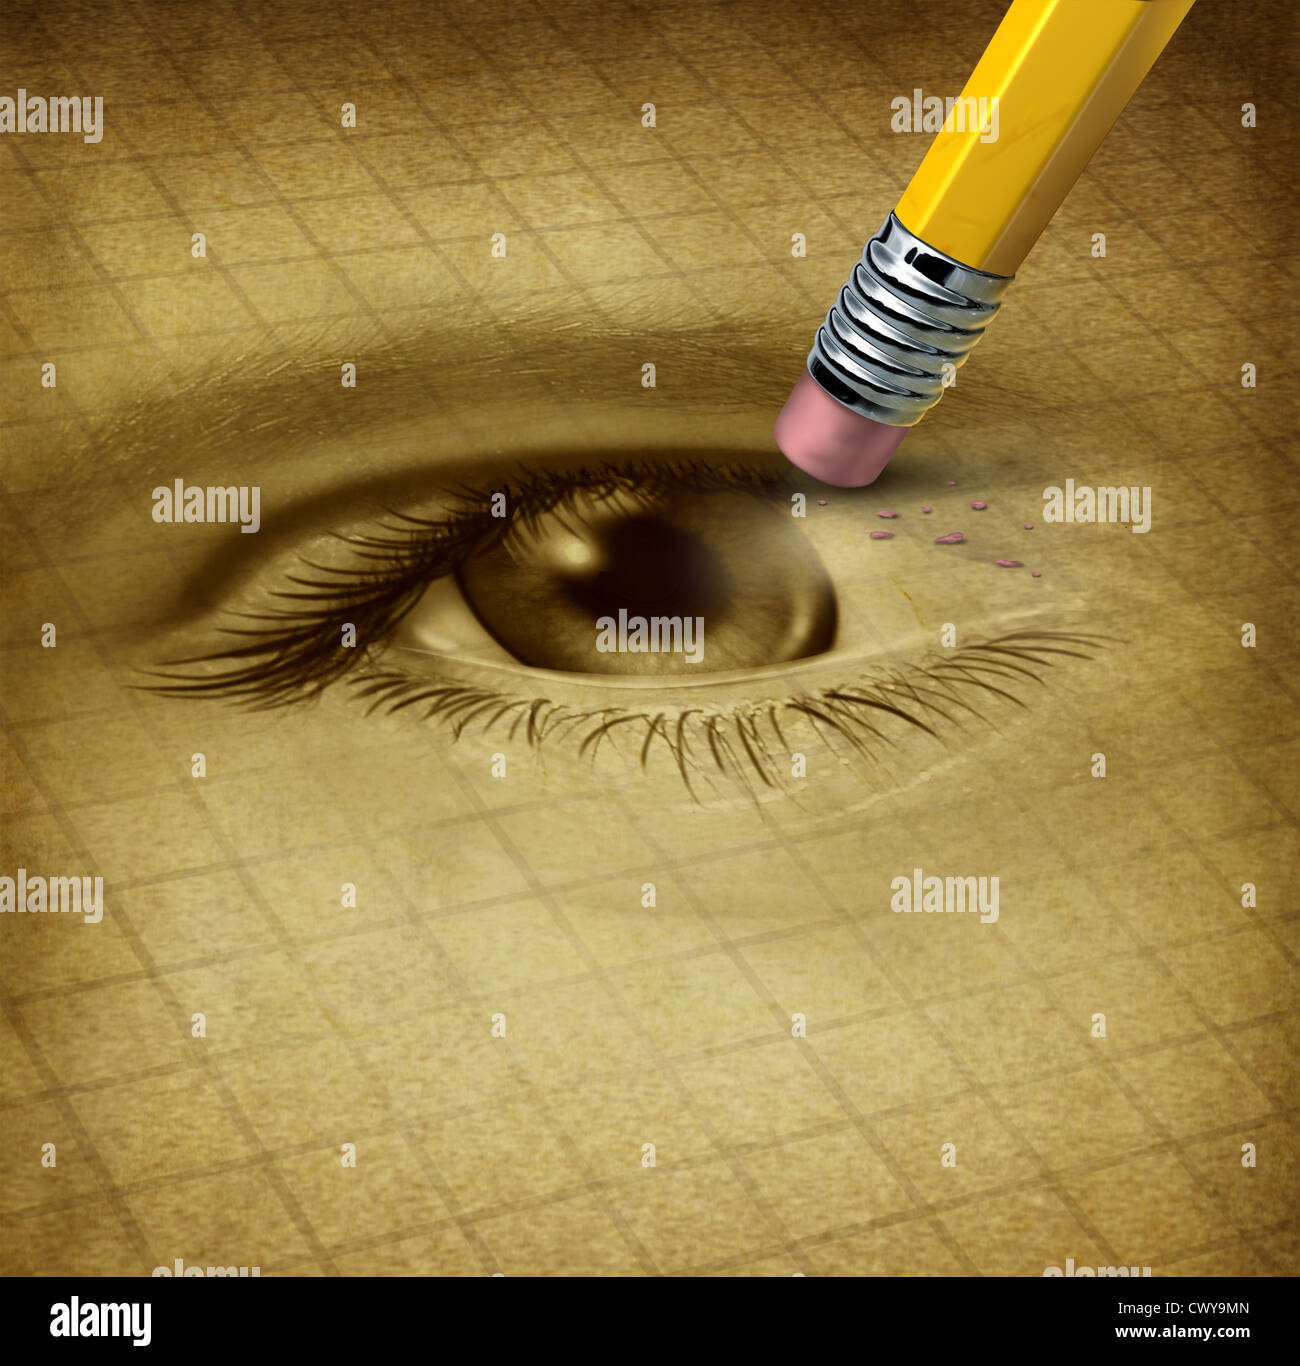 Vision Verlust Ad verlieren Augenlicht medizinische Gesundheitsversorgung Konzept mit einem menschlichen Anblick Organ durch einen Bleistift als Symbol gelöscht werden Stockfoto